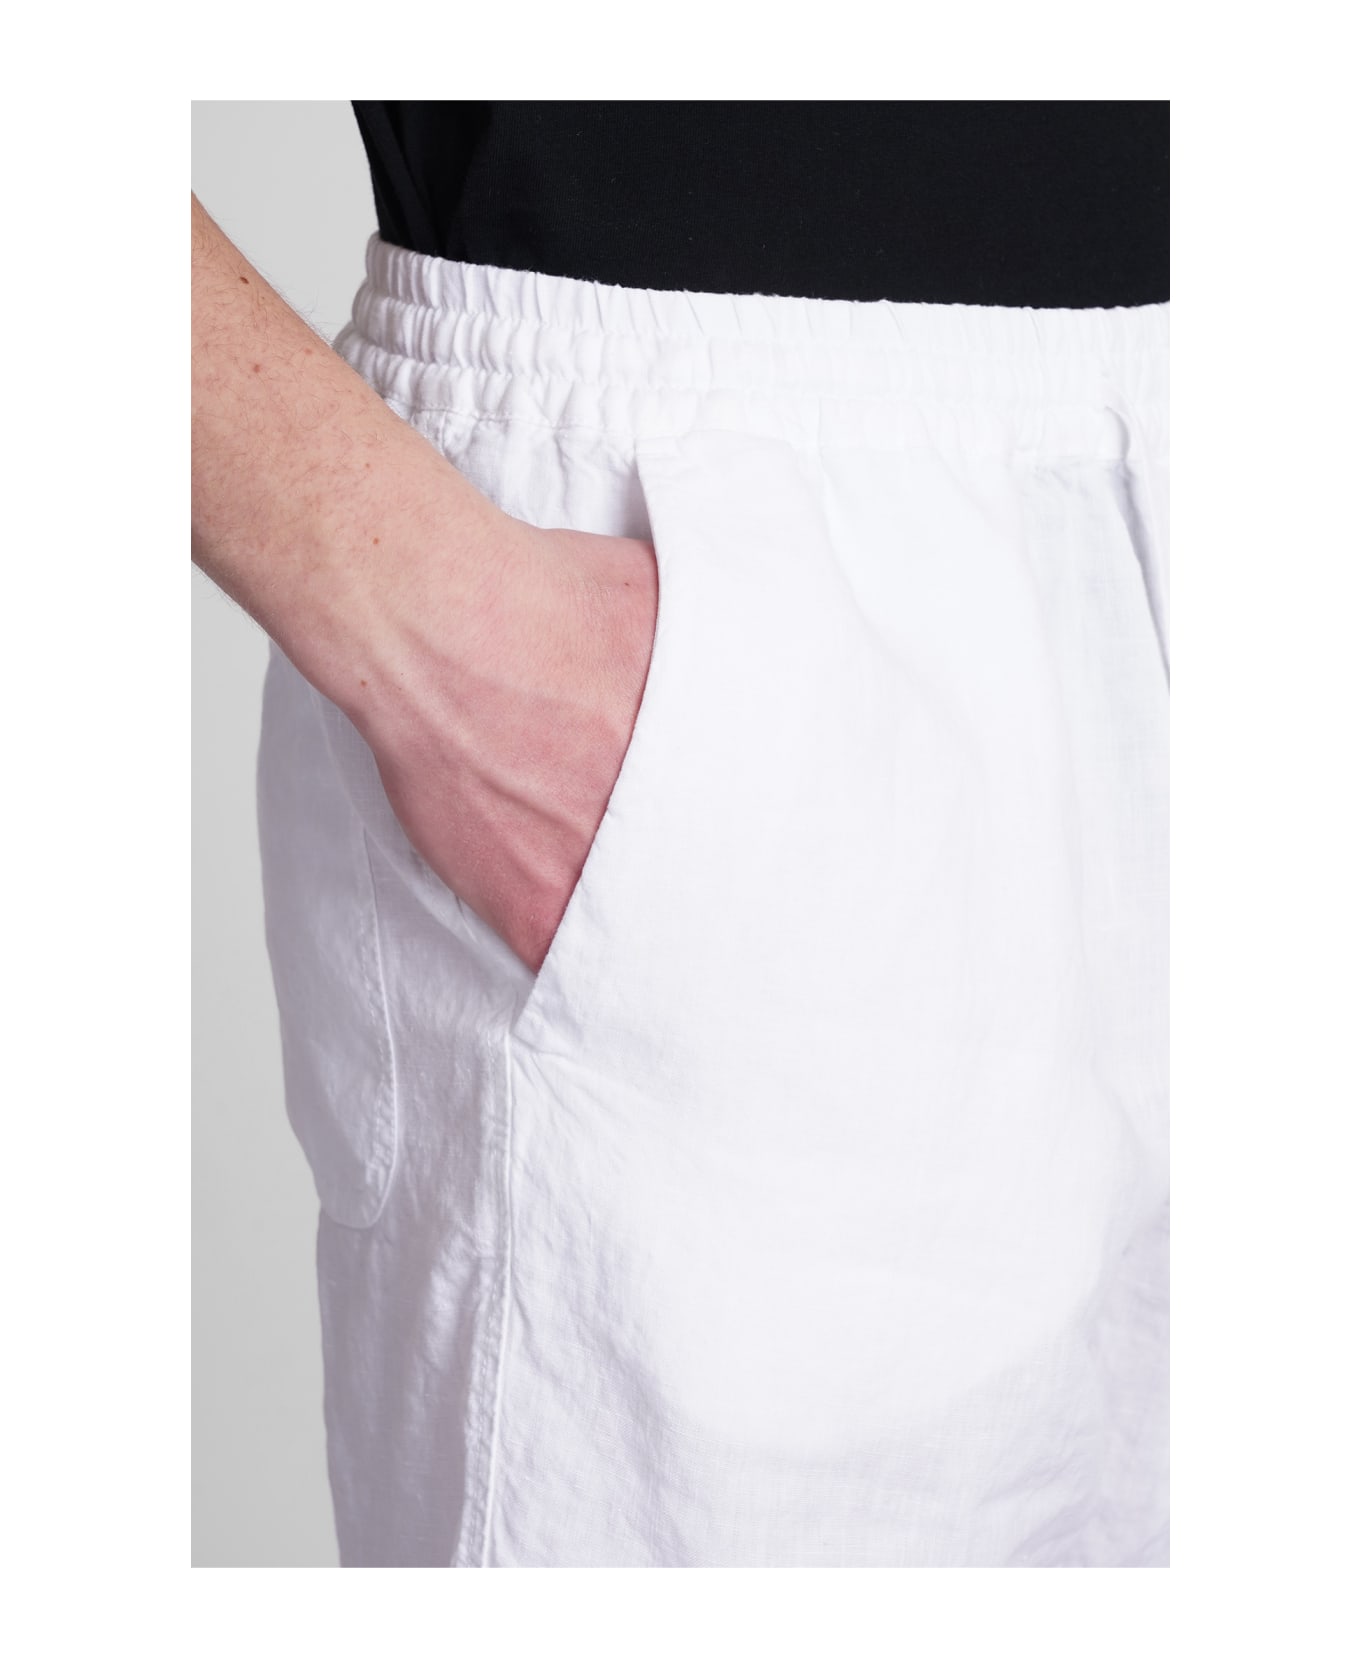 120% Lino Shorts In White Linen - white ショートパンツ